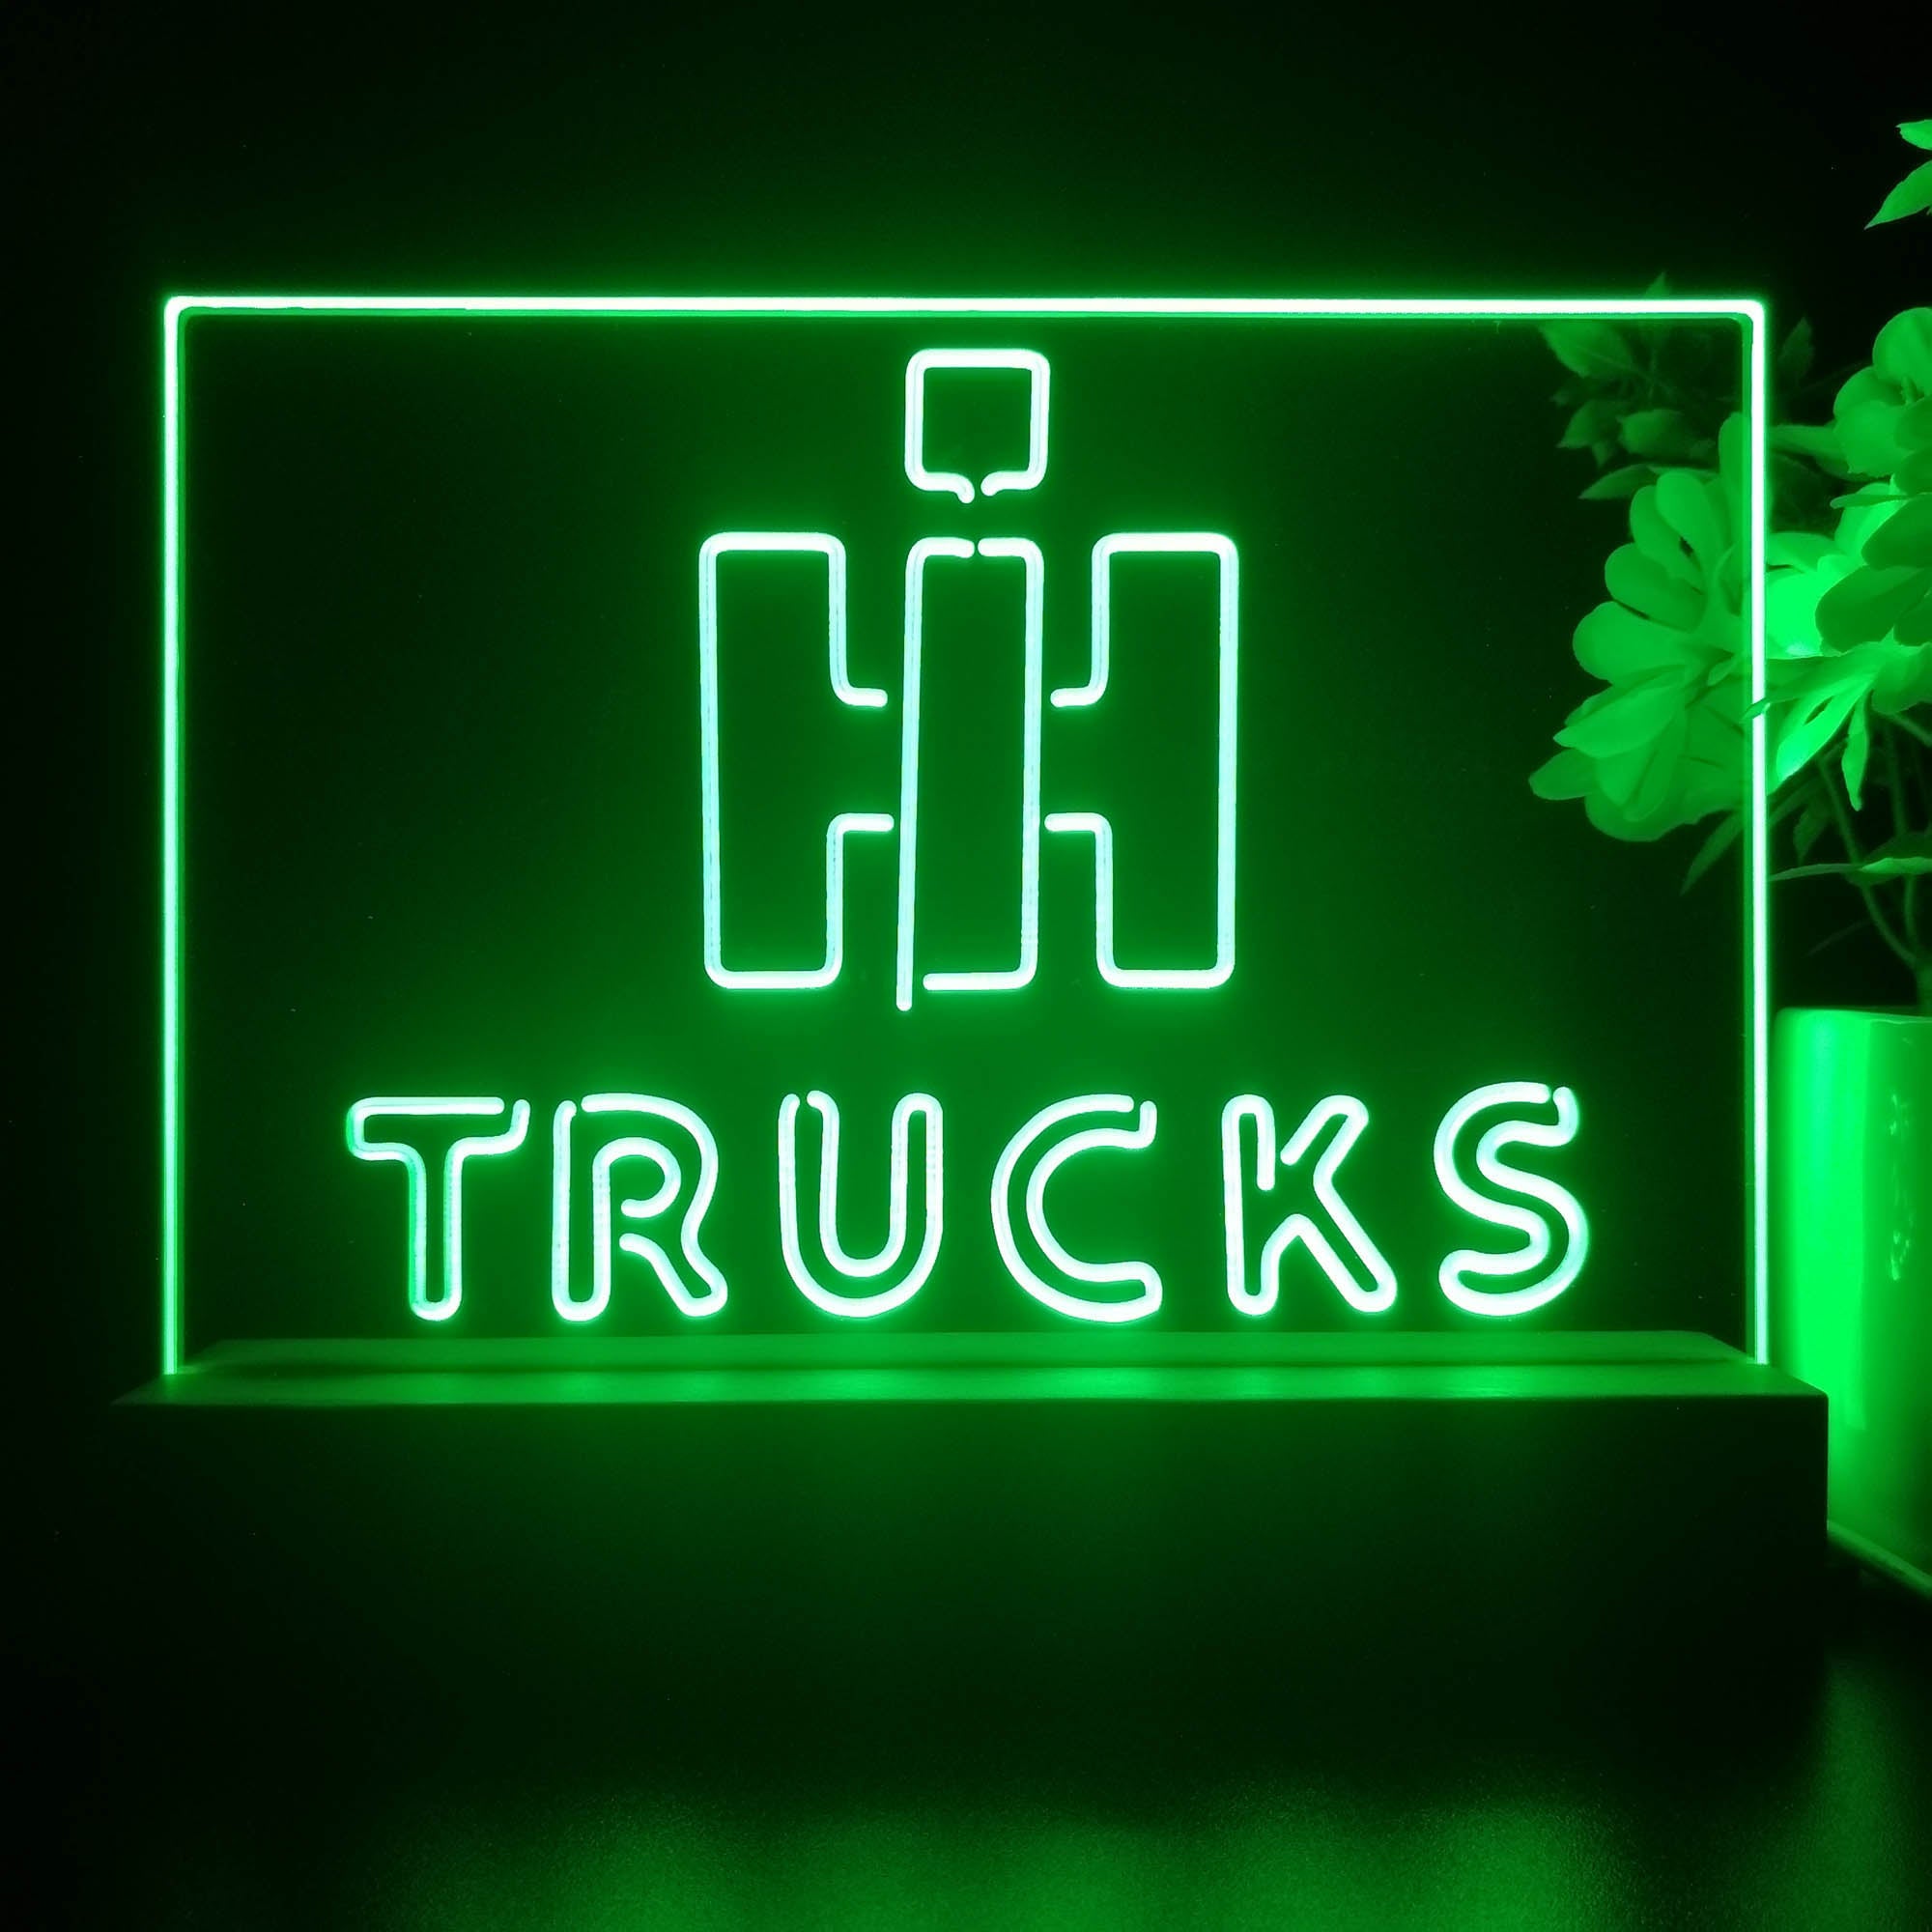 International Harvester Trucks 3D Illusion Night Light Desk Lamp